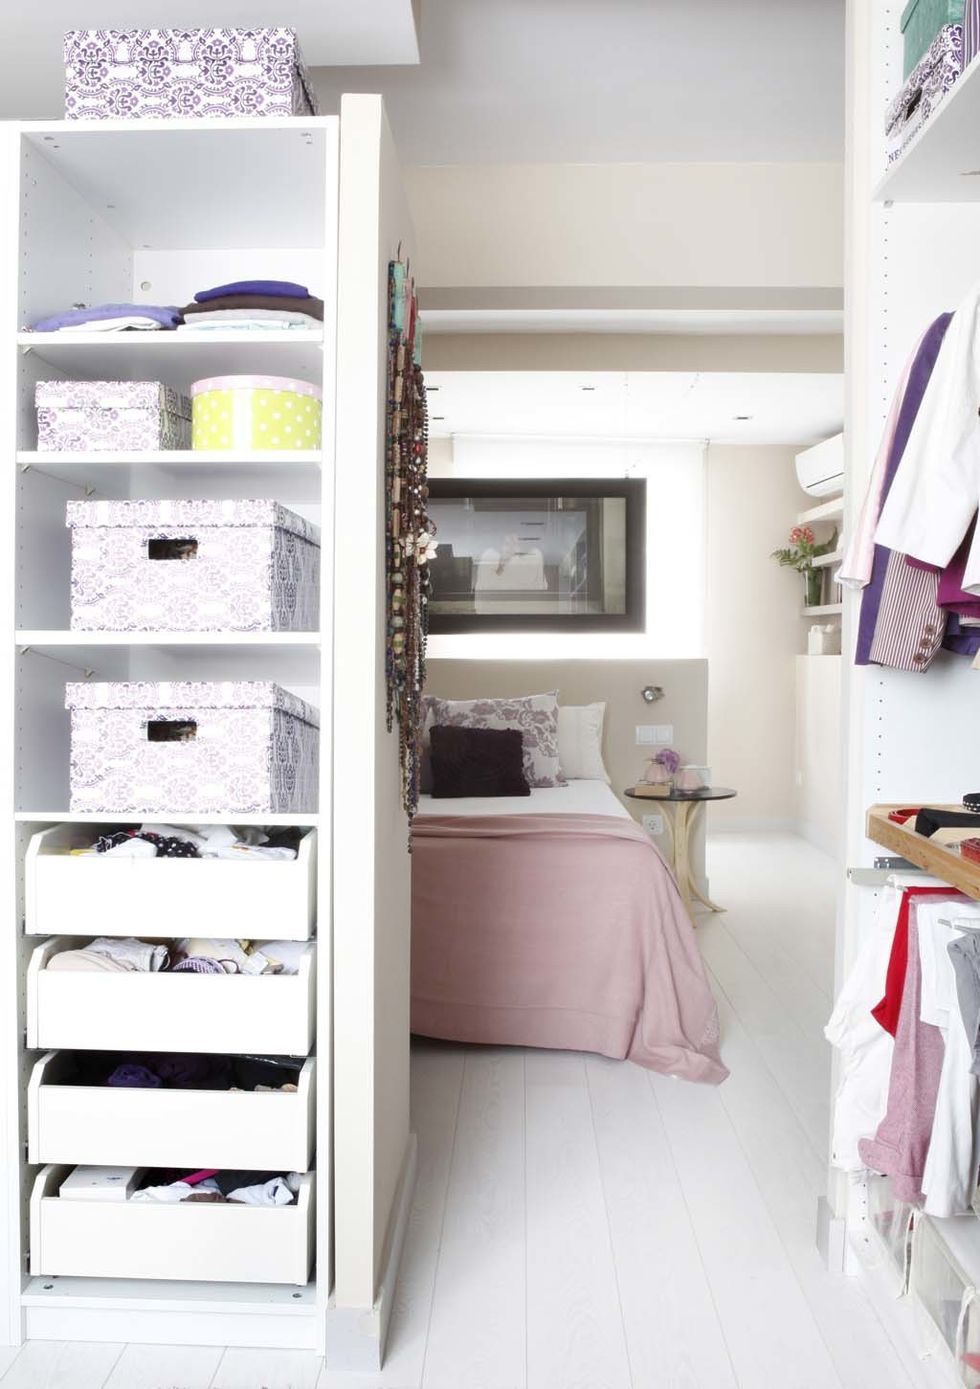 <p>Si tienes un dormitorio grande, convierte la mitad del espacio en vestidor con unas cuantas estanterías de almacenaje como proponen en esta práctica idea. Cajas y cajones harán el resto.&nbsp;</p>